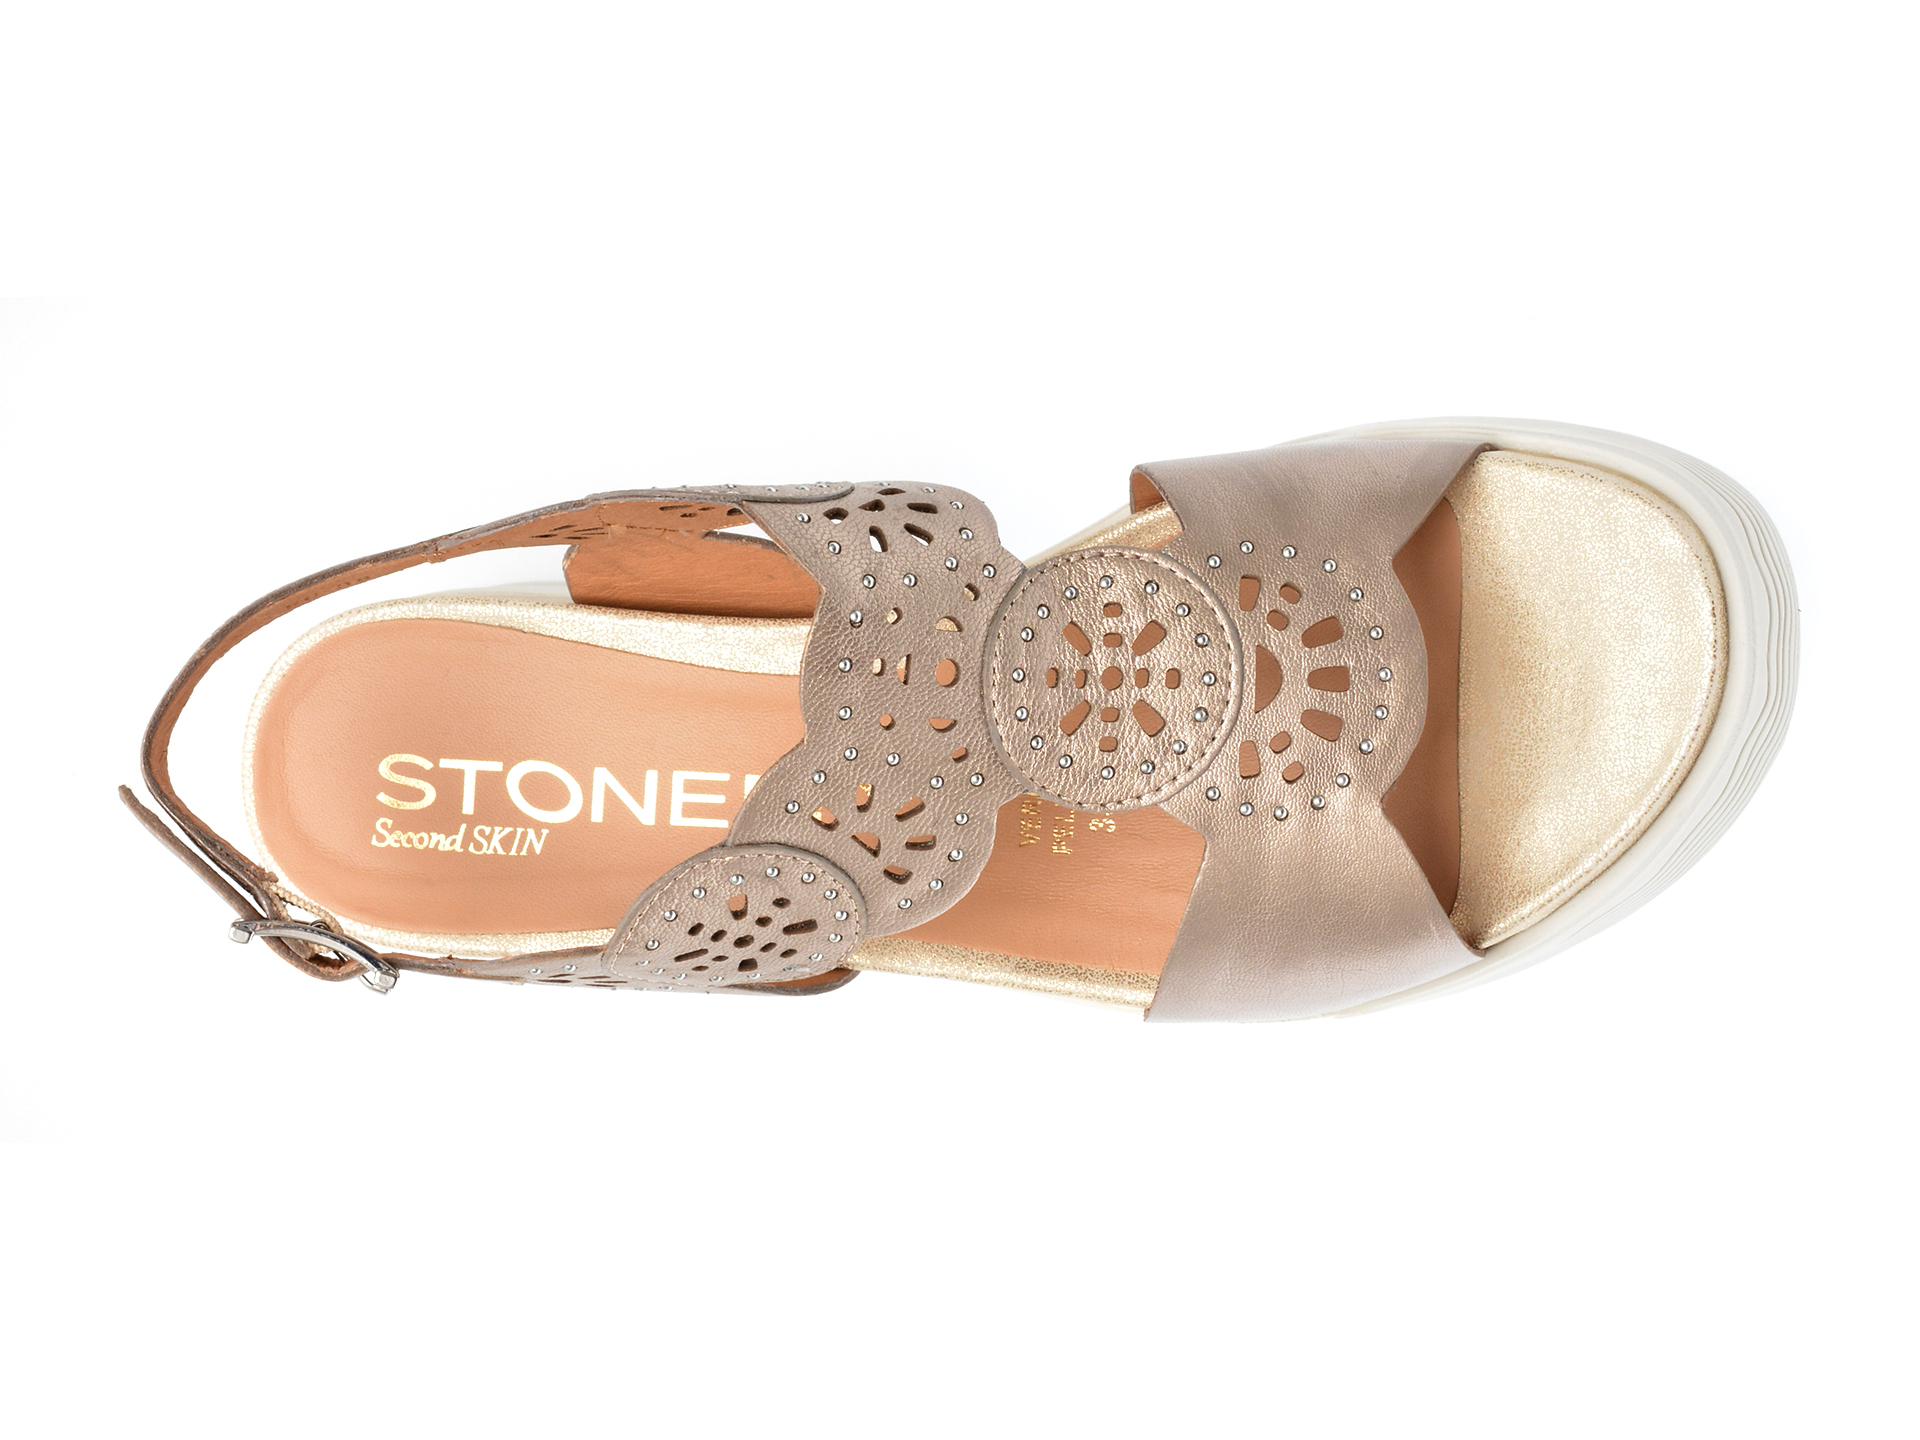 Poze Sandale STONEFLY bronz, PARKY21, din piele naturala otter.ro